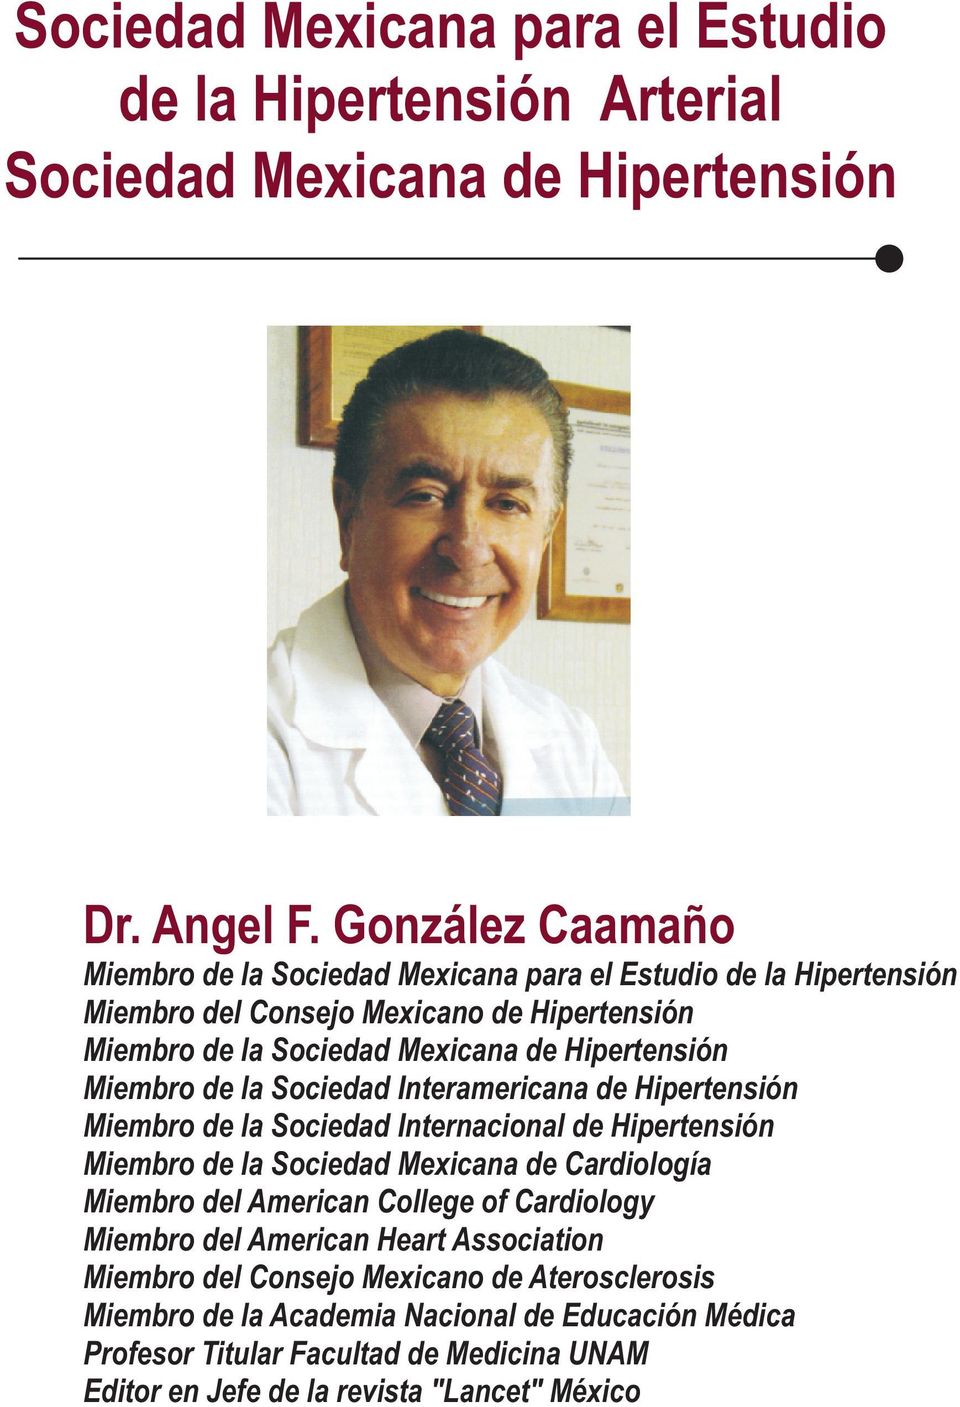 Miembro de la Sociedad Interamericana de Hipertensión Miembro de la Sociedad Internacional de Hipertensión Miembro de la Sociedad Mexicana de Cardiología Miembro del American